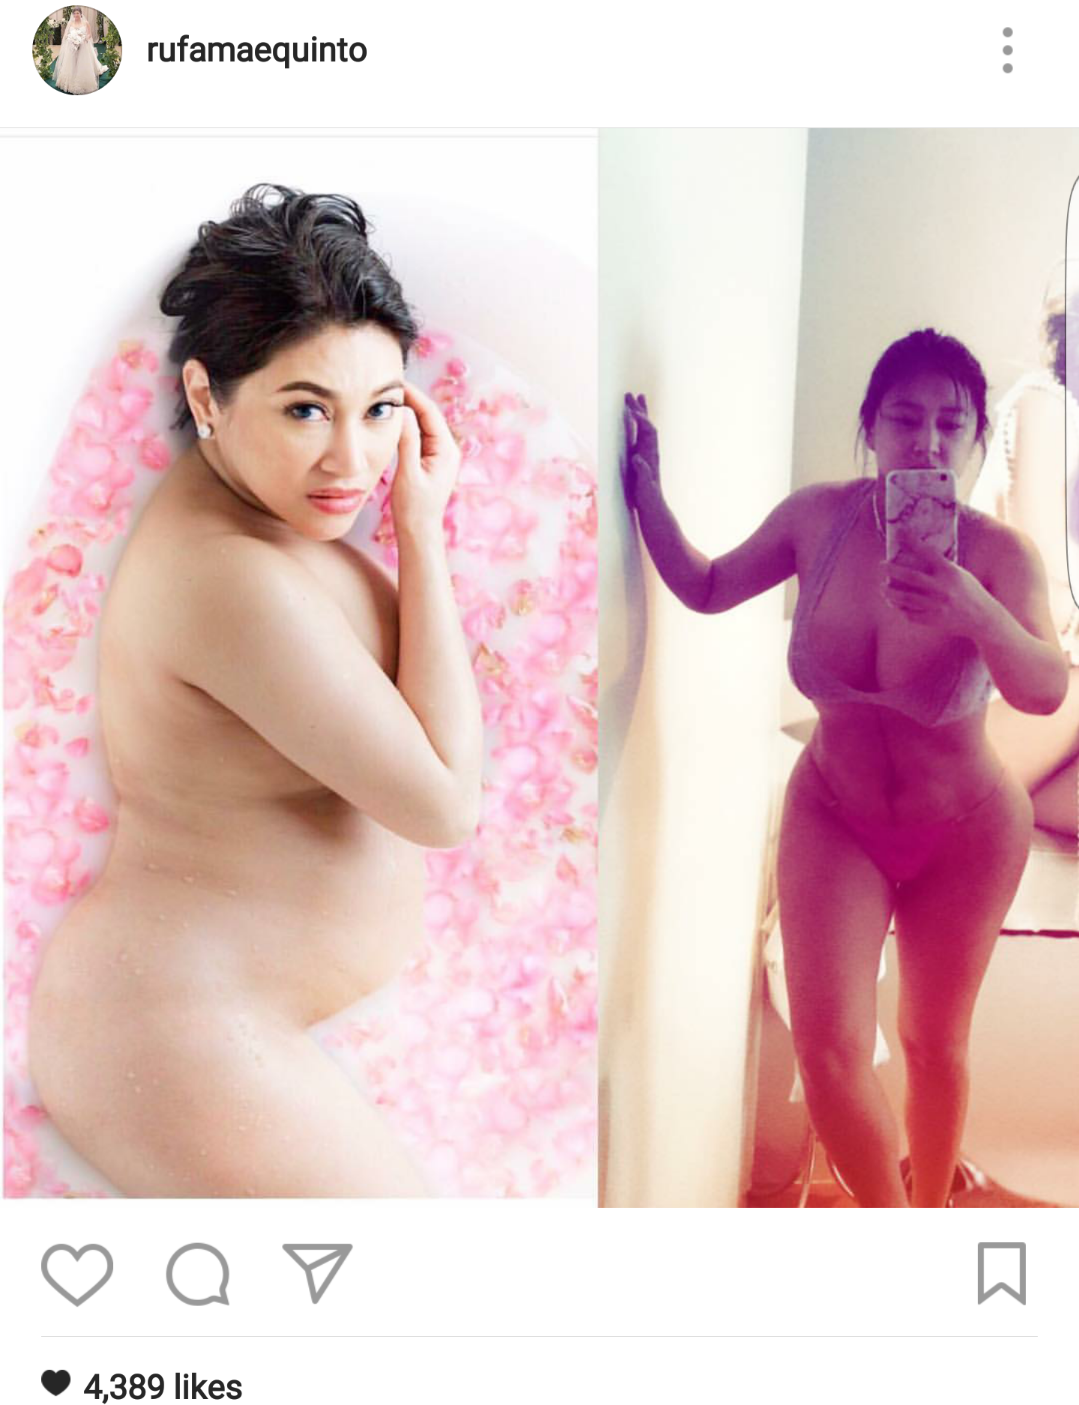 The P. reccomend Rufa mae quinto naked fake photos